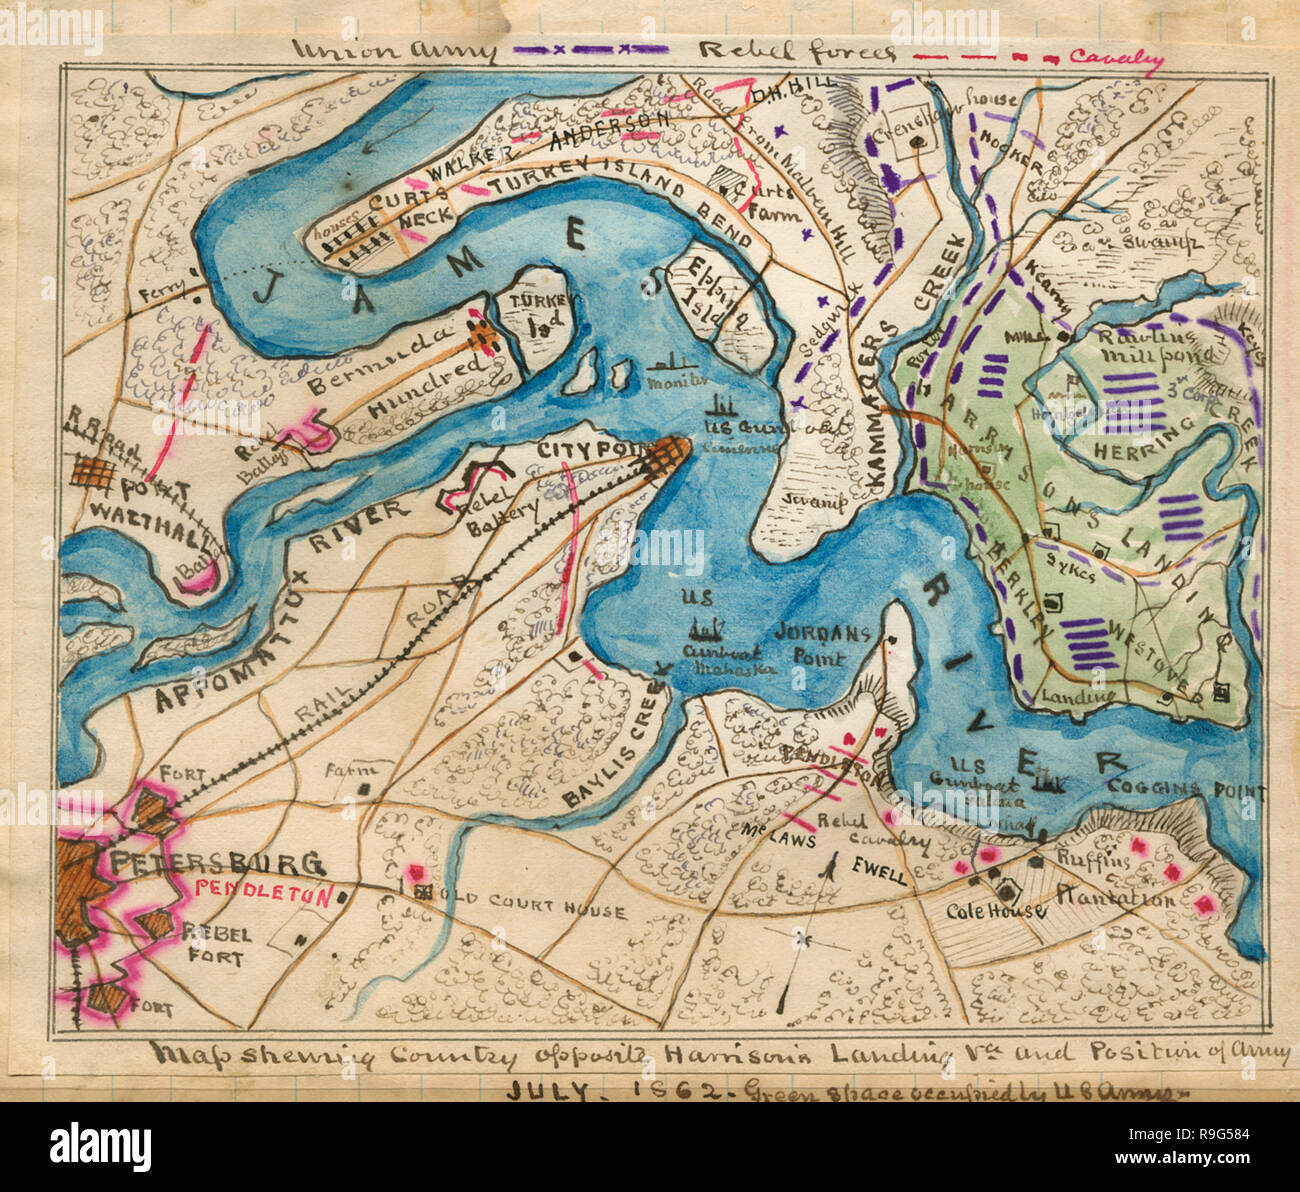 Karte Land gegenüber Harrison's Landing, Virginia, und die Position der Union Armee. Zeigt die Lage entlang der James River zwischen Petersburg und Harrison's Landing, Va., der die Lager der US-Armee des Potomac nach sieben Tagen, "Schlachten, 26. Juni-1. Juli 1862. Positionen der US-kanonenboote sind entlang der James River sowie Konföderierten Festungen und Positionen der Kavallerie. Stockfoto